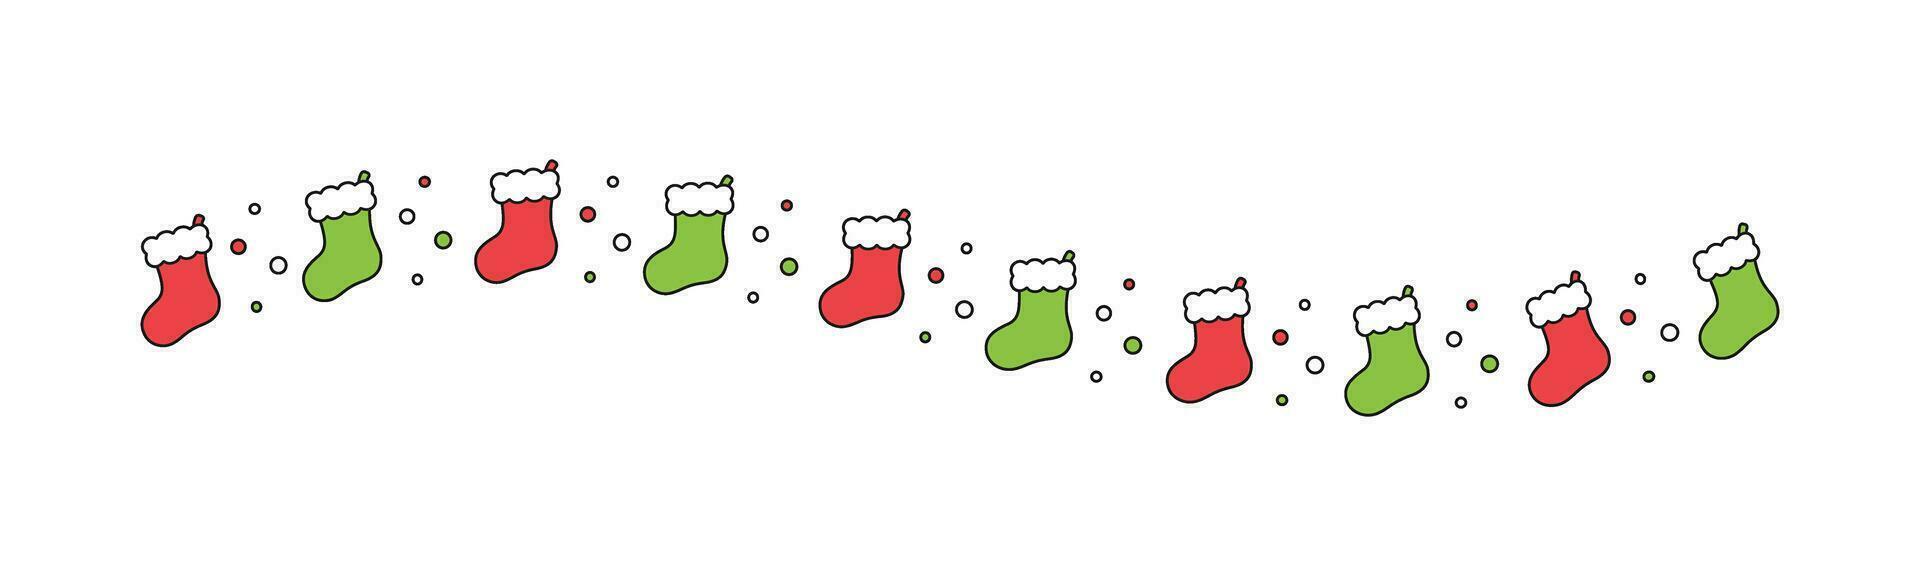 Kerstmis themed decoratief golvend grens en tekst verdeler, Kerstmis kous patroon. vector illustratie.